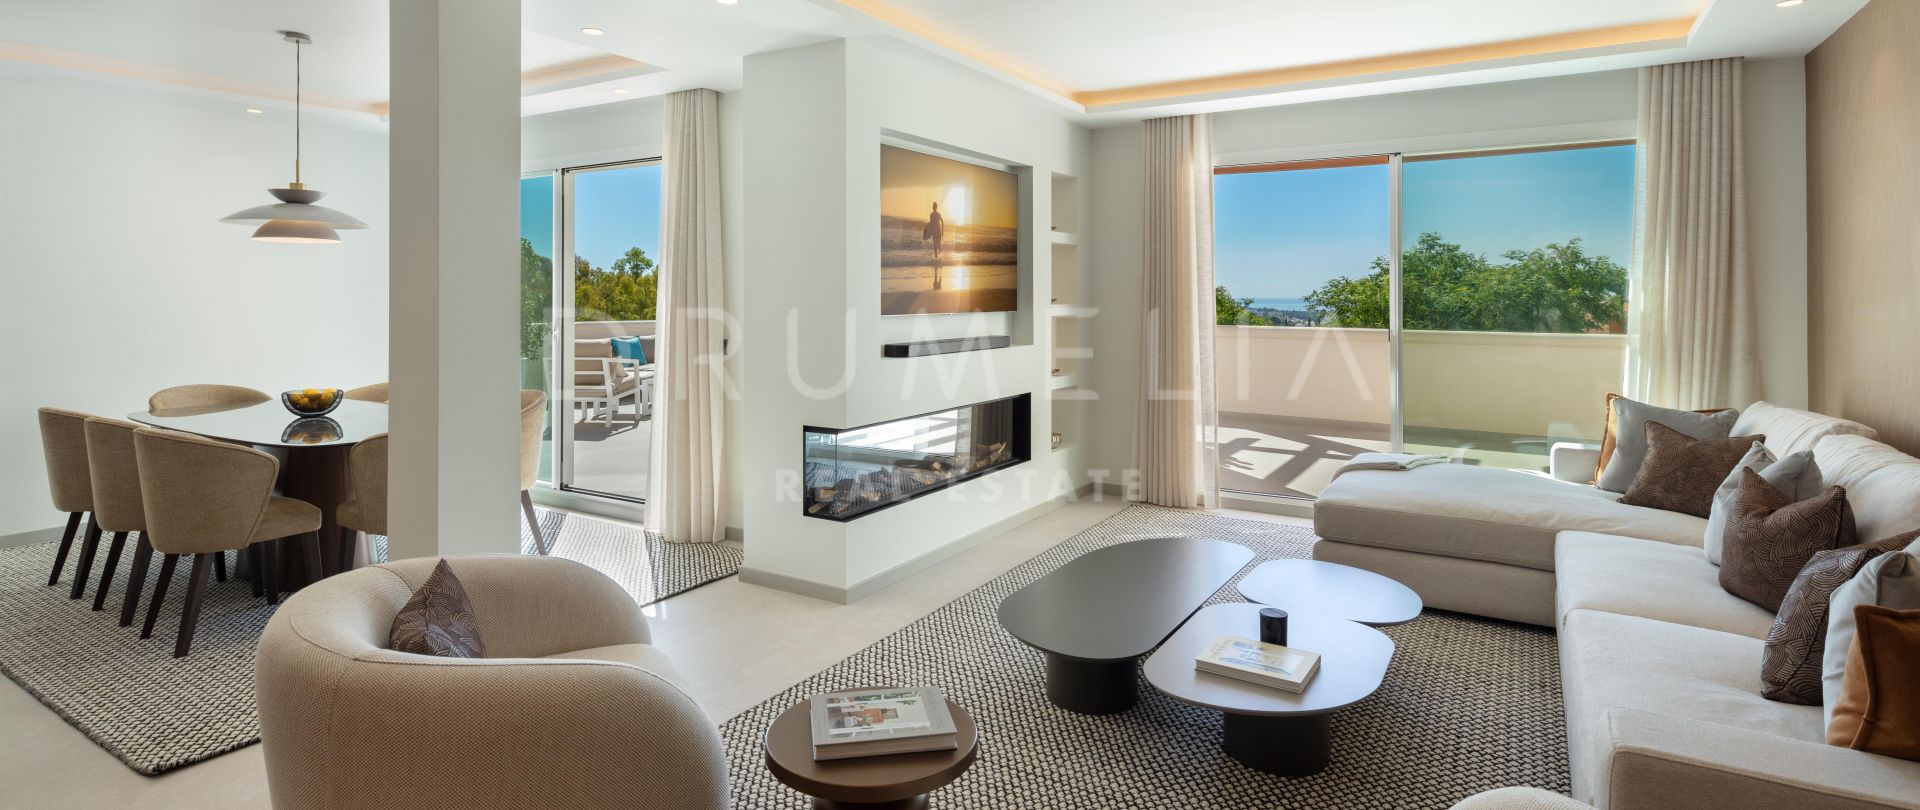 Luxurious Duplex Corner Apartment for sale in Los Belvederes Nueva Andalucia Marbella